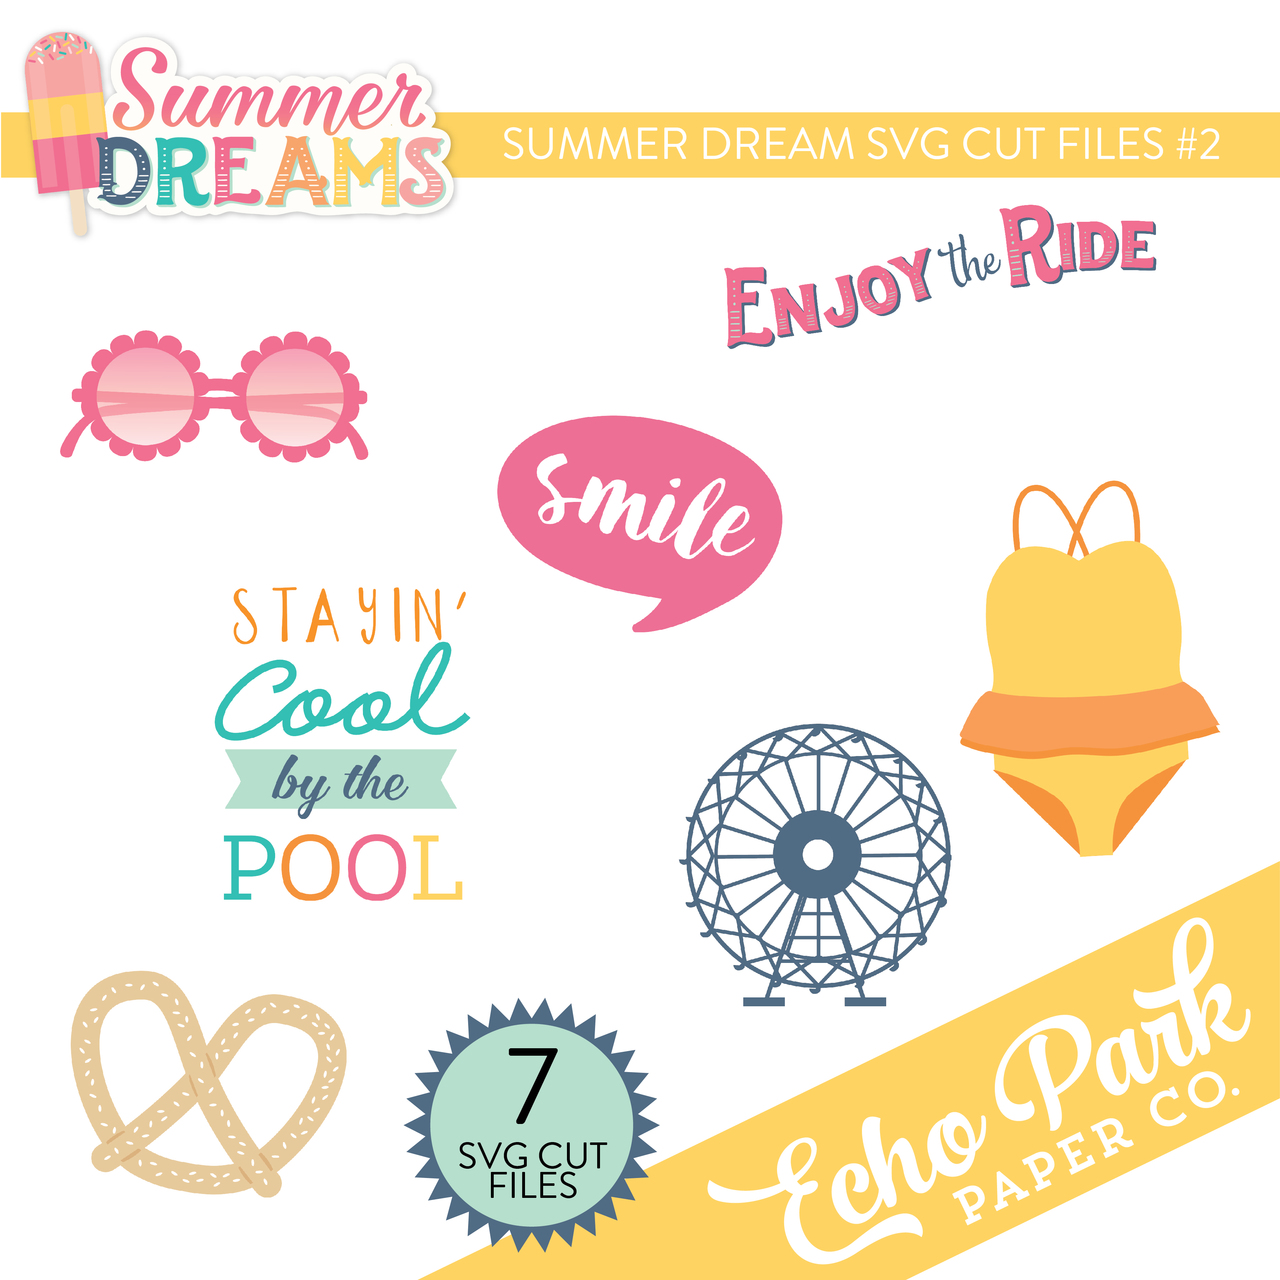 Summer Dreams SVG Cut Files #2